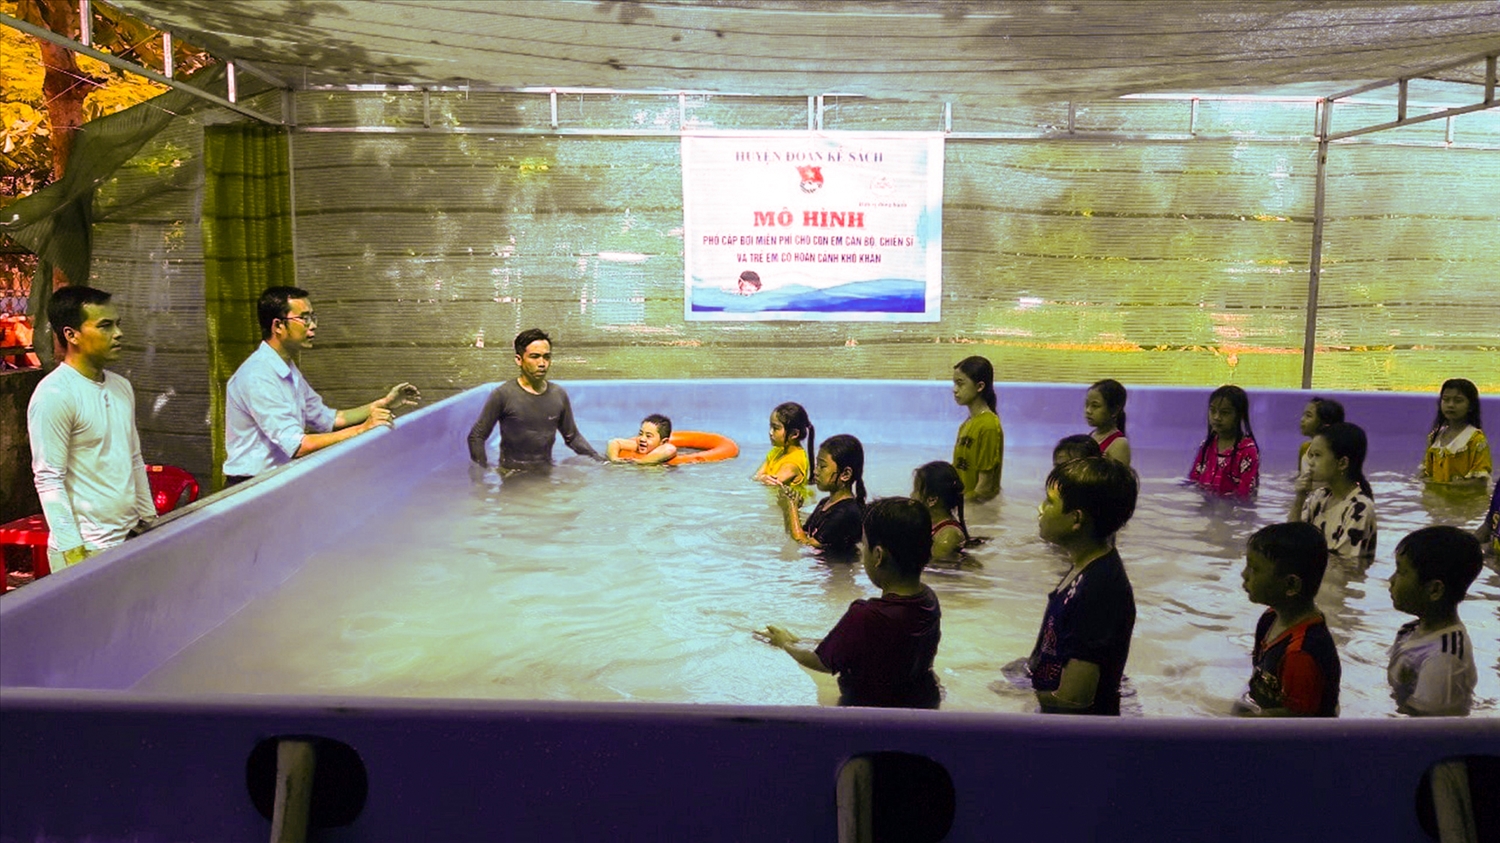 Lớp học bơi của thầy Tính (bìa trái) có khoảng trên dưới 30 em và gần 6 năm qua đã có hơn 1.000 em học sinh ở địa phương biết bơi. Ảnh: Trinh Trinh